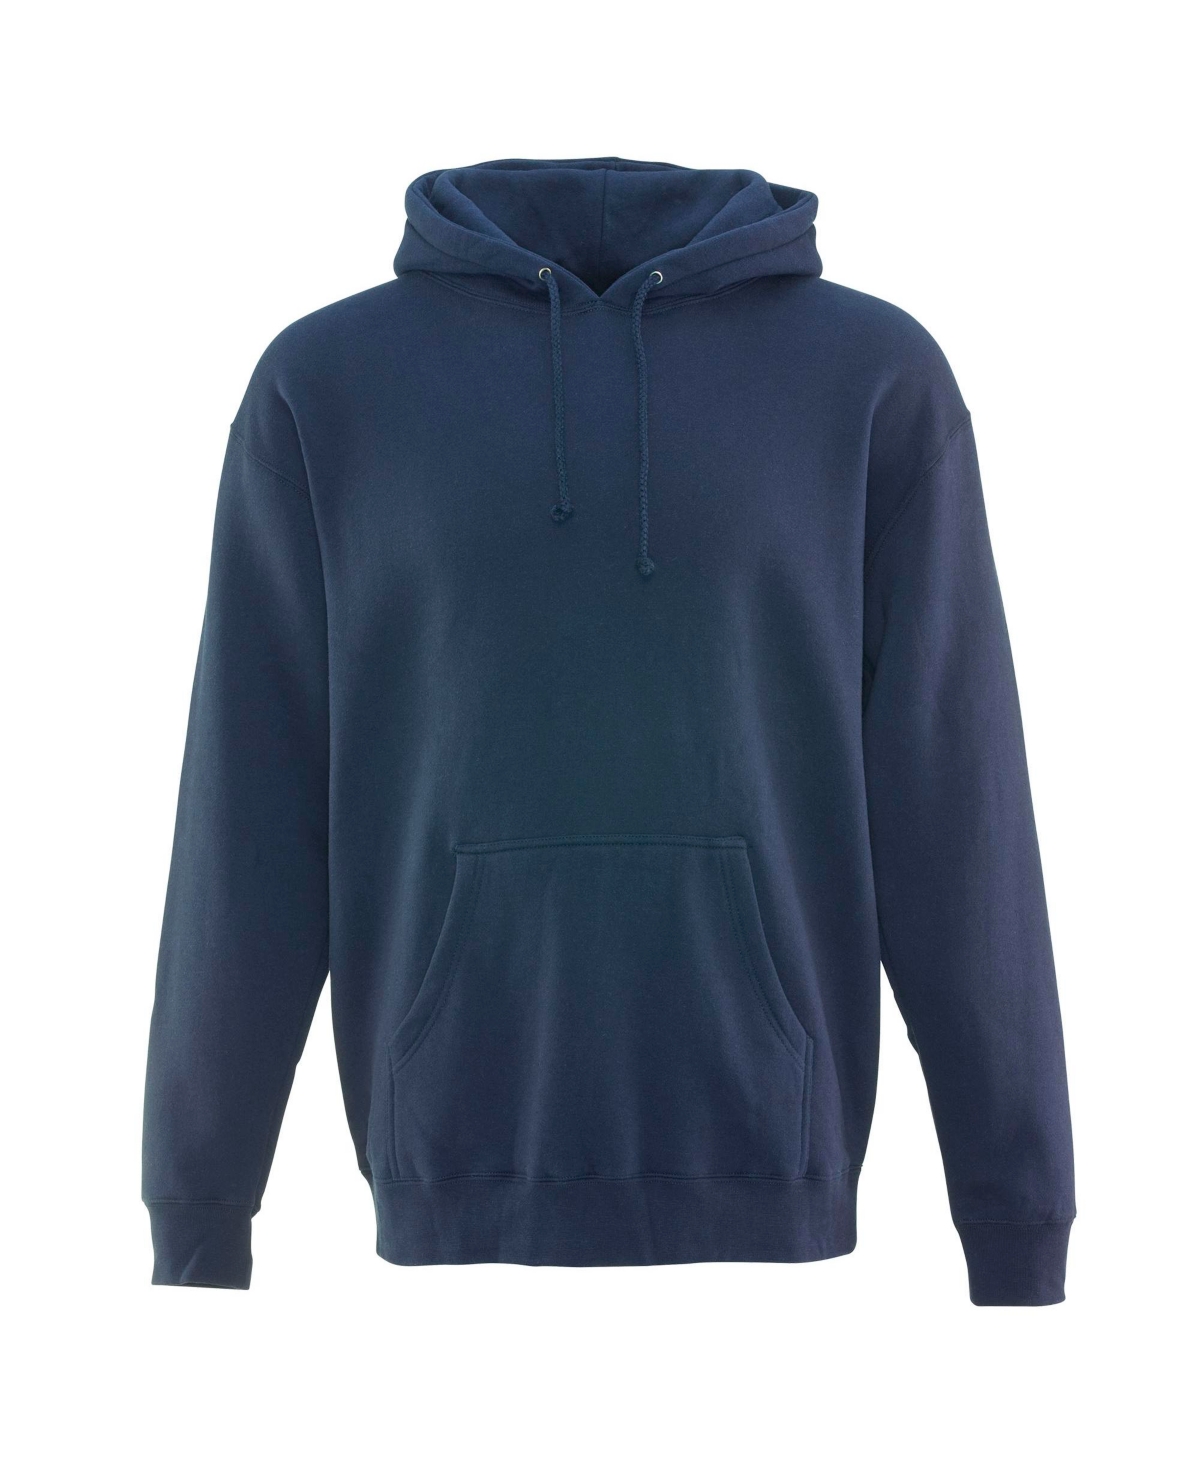 Men's Fleece Hooded Sweatshirt - Navy